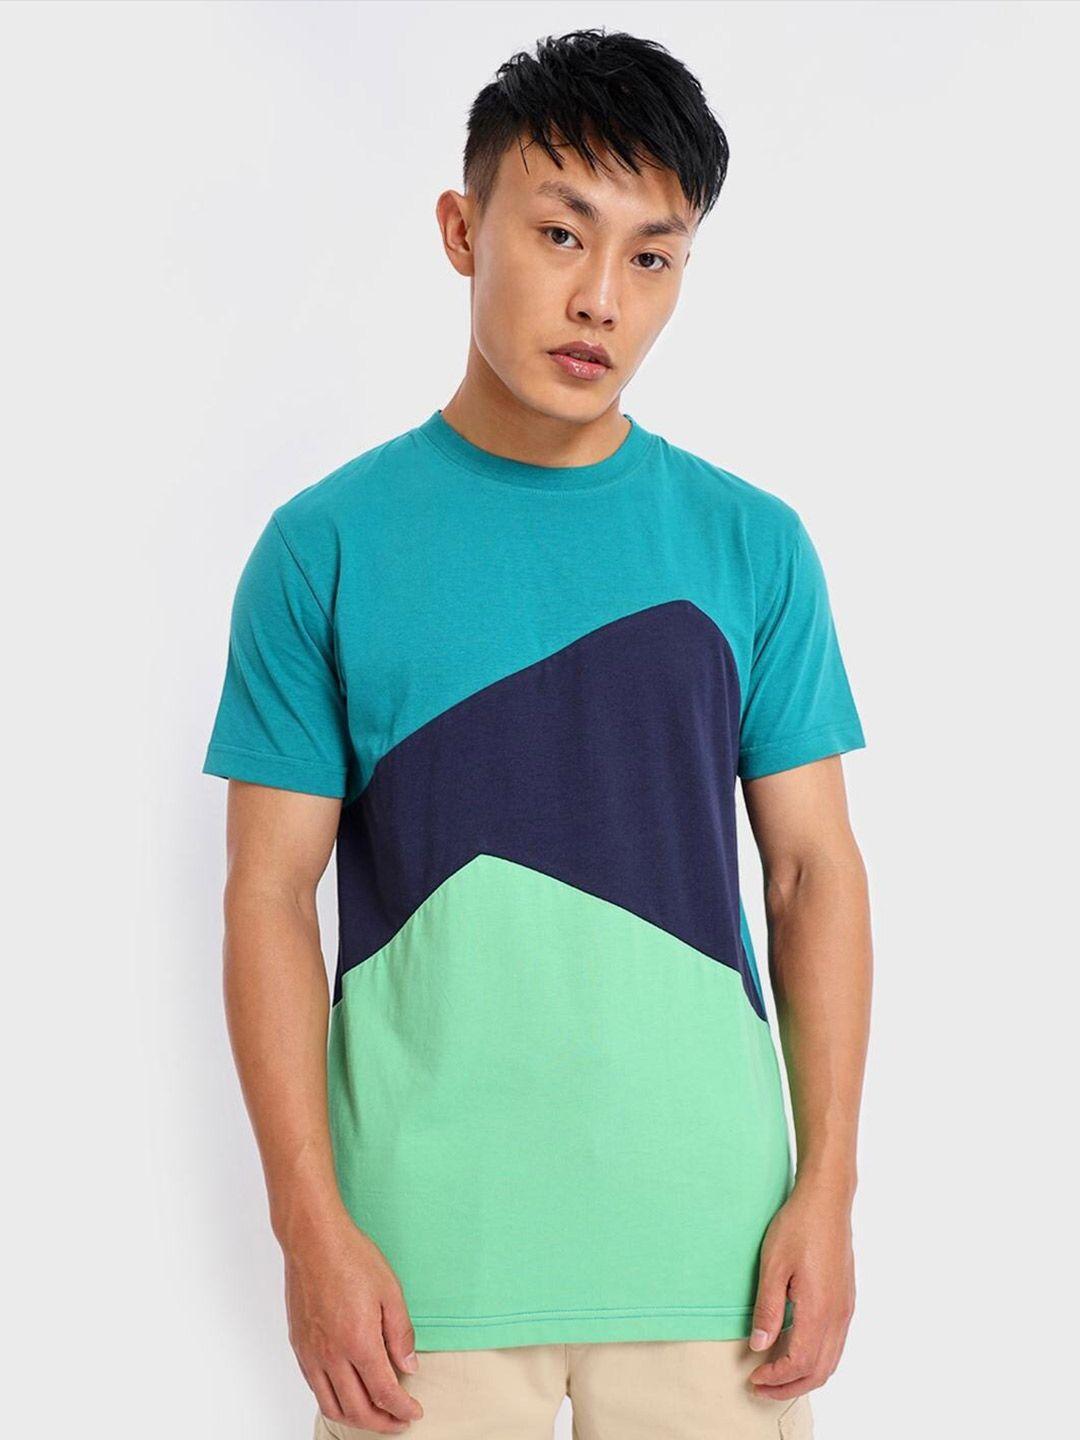 bewakoof men sea green & blue colourblocked cotton t-shirt